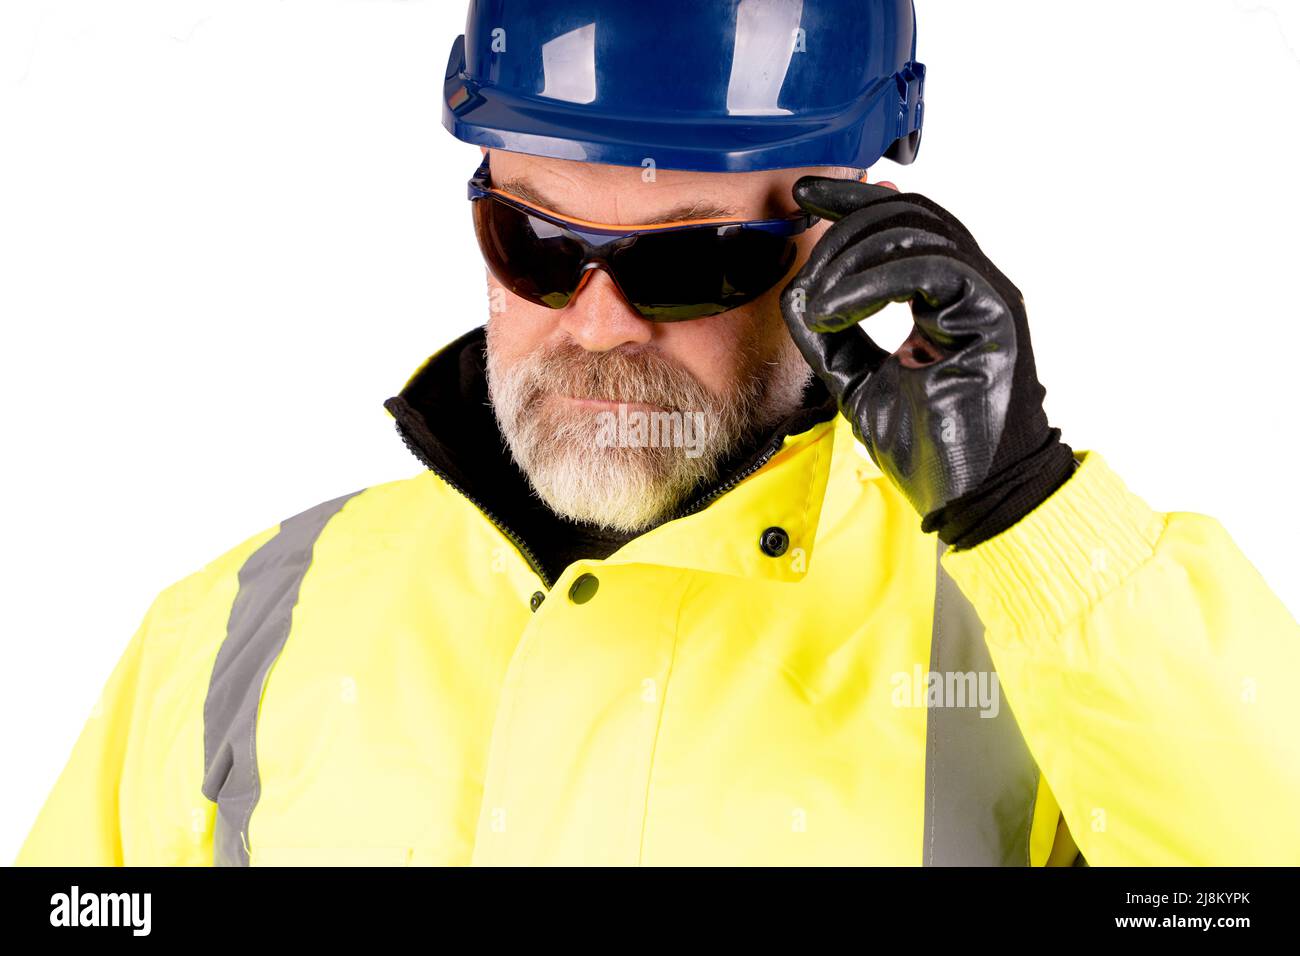 Un ouvrier de la construction, vêtu d'un chapeau bleu et d'un manteau jaune de haute viz sur fond blanc, portant des lunettes de sécurité teintées foncé Banque D'Images